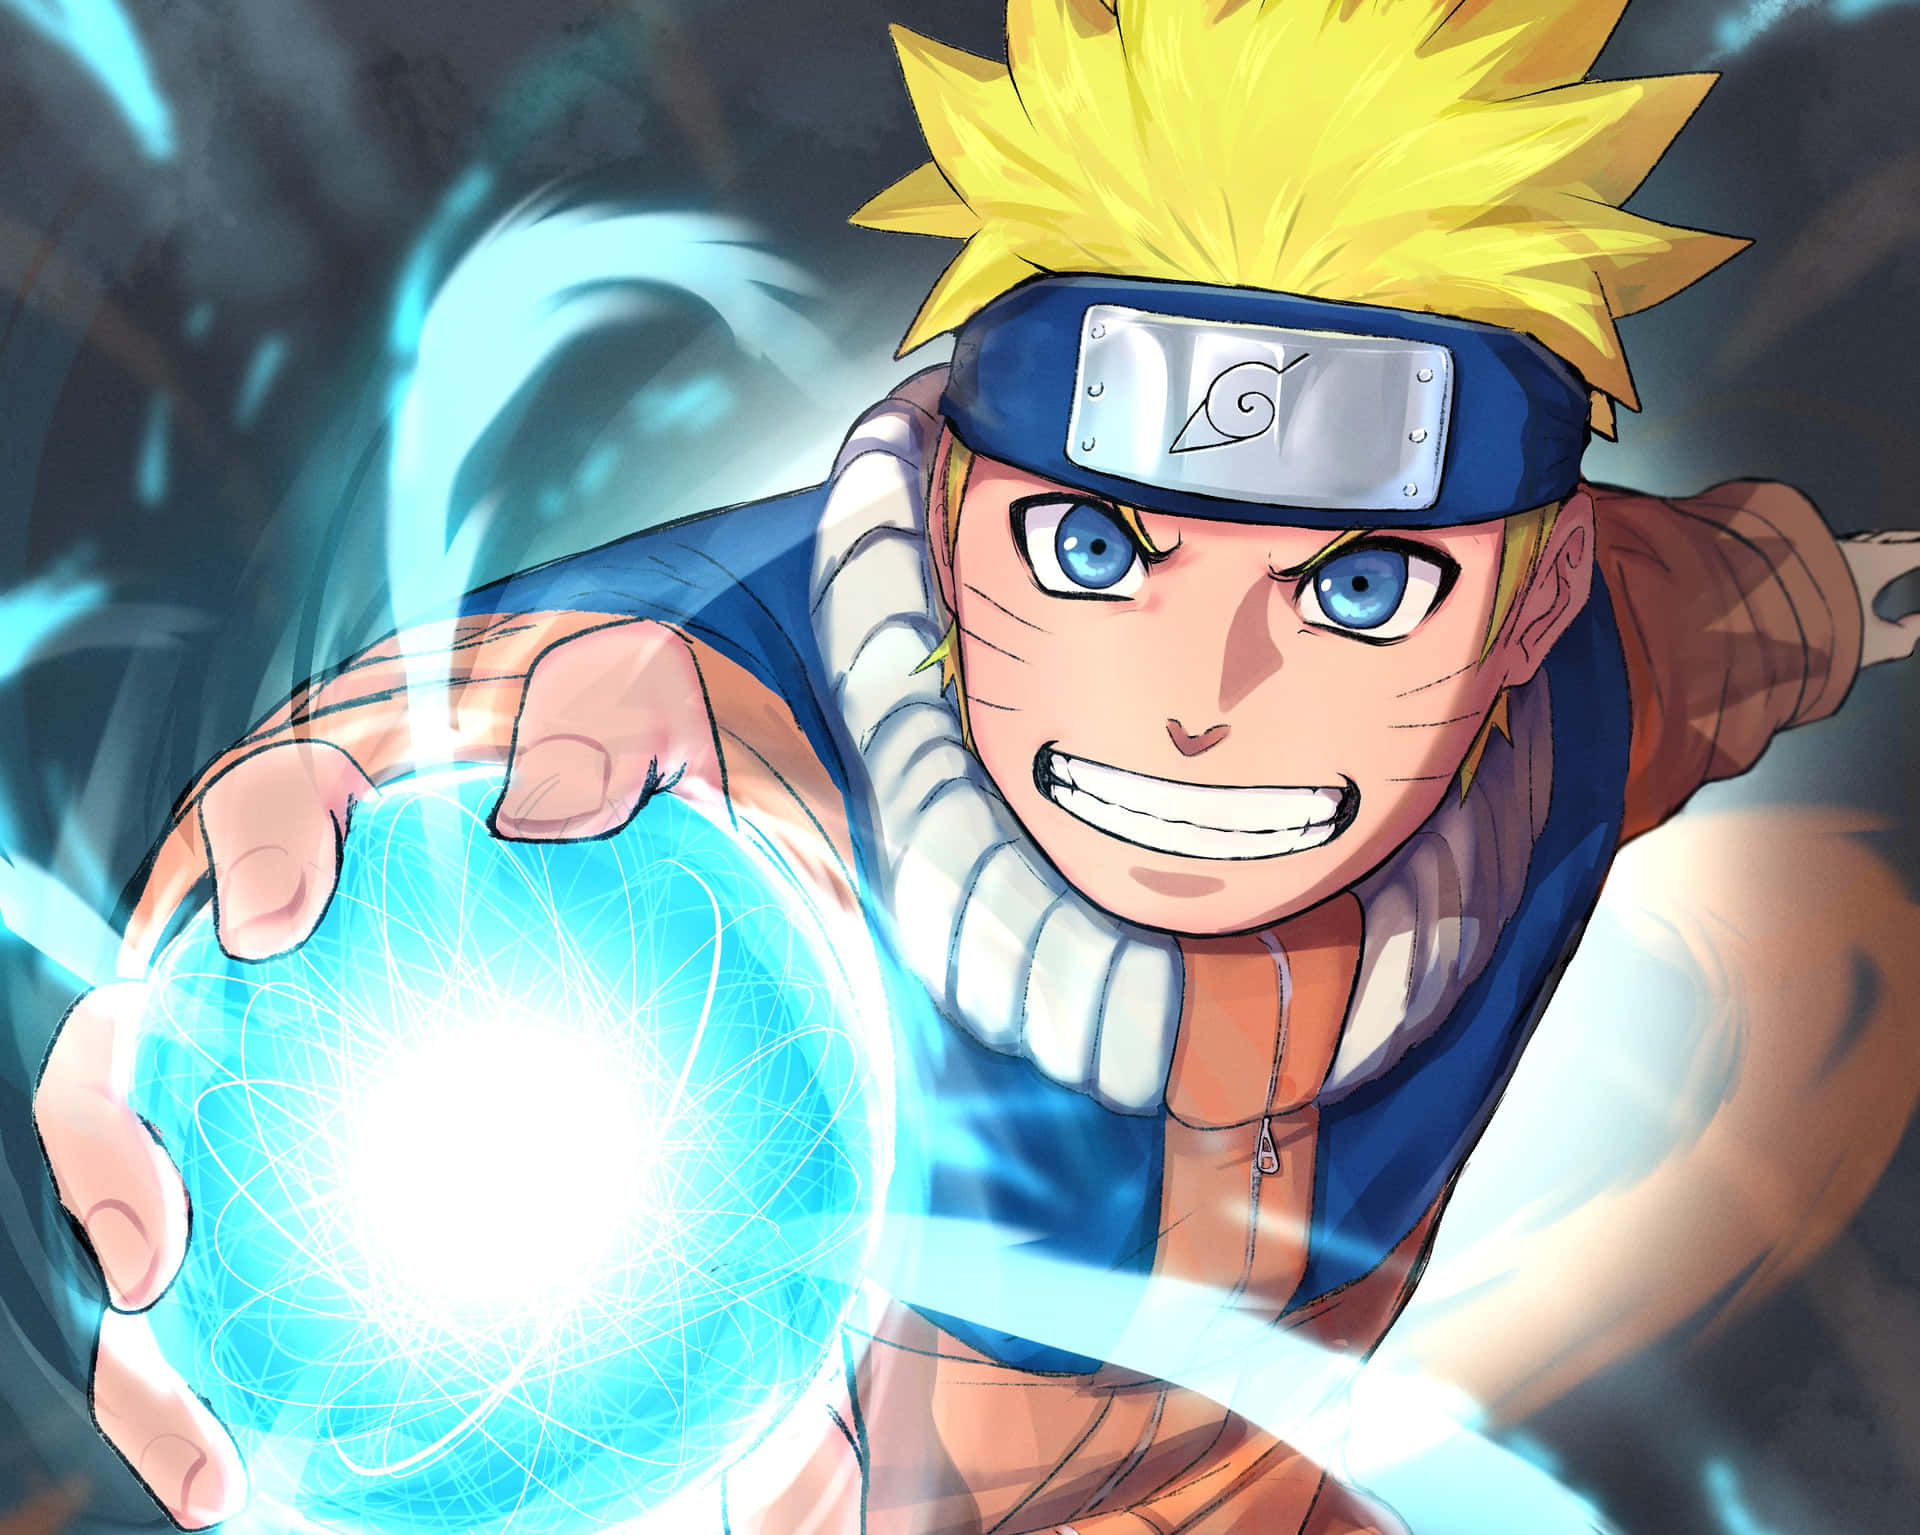 Bạn là một fan cuồng của Naruto? Thì hình nền Naruto Rasengan sẽ là cái tên không thể bỏ qua đối với bạn! Đầy mạnh mẽ và mang lại niềm tin vào bản thân, hình ảnh này sẽ giúp bạn giải tỏa căng thẳng trong công việc và cảm thấy đầy hứng khởi mỗi khi ngắm nhìn. Hãy để hình nền Naruto Rasengan giúp bạn thành công hơn trong cuộc sống này!